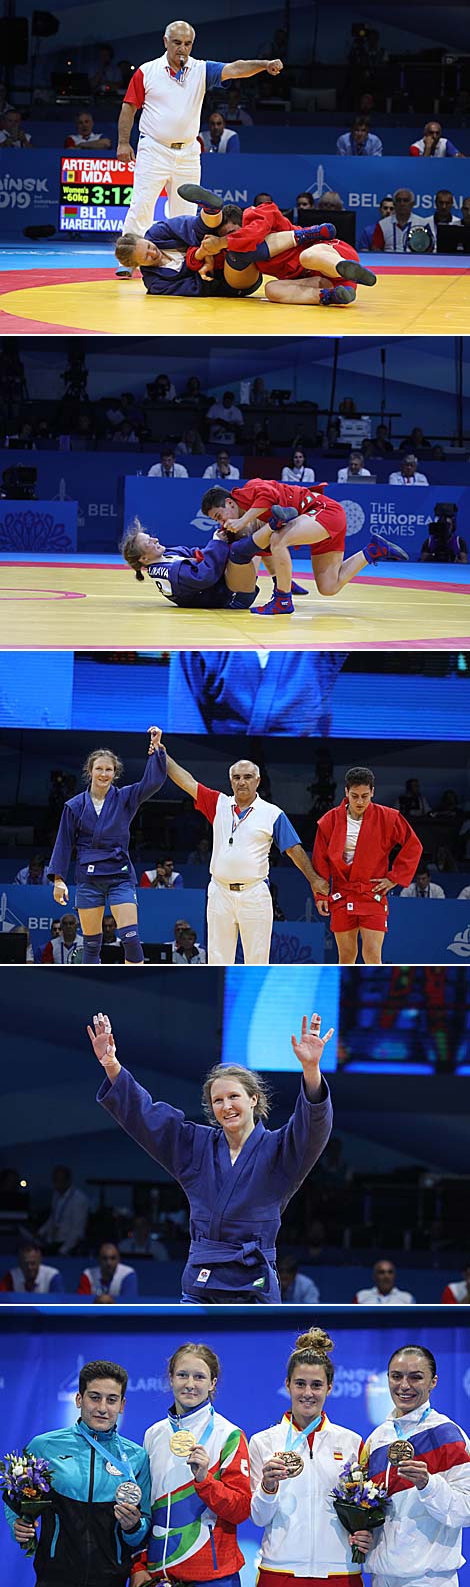 Белорусская самбистка Вера Гореликова выиграла турнир II Европейских игр